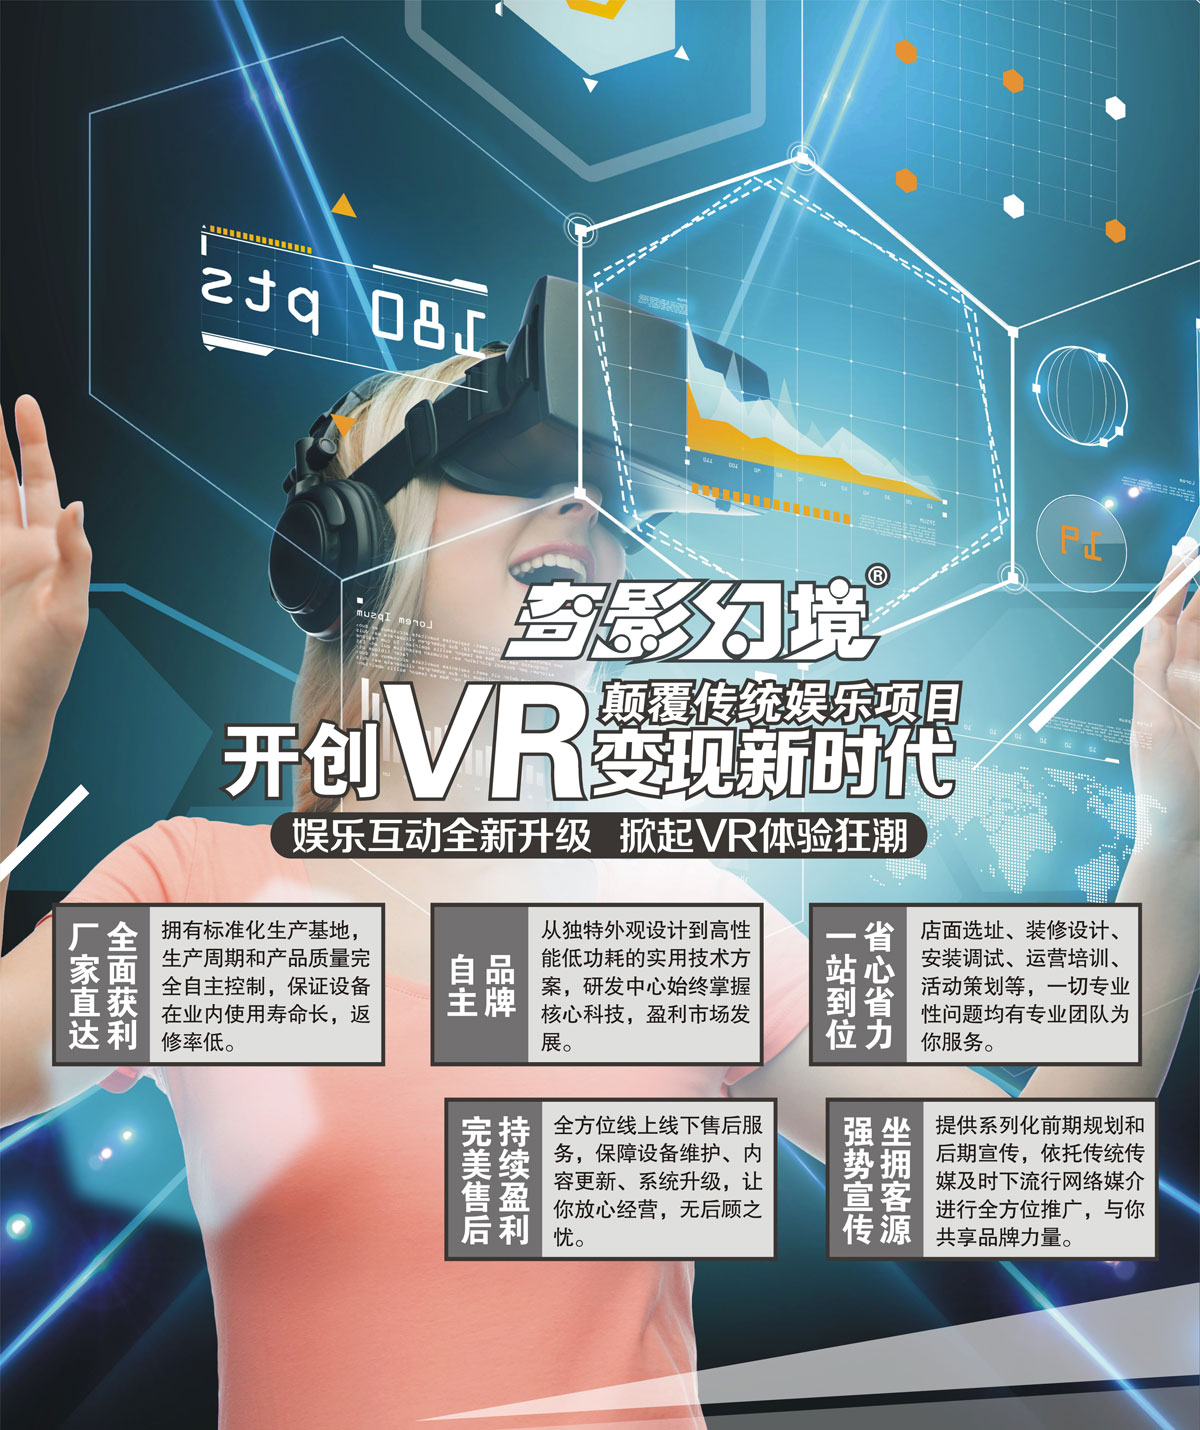 奇影幻境开创VR变现新时代颠覆传统娱乐项目.jpg